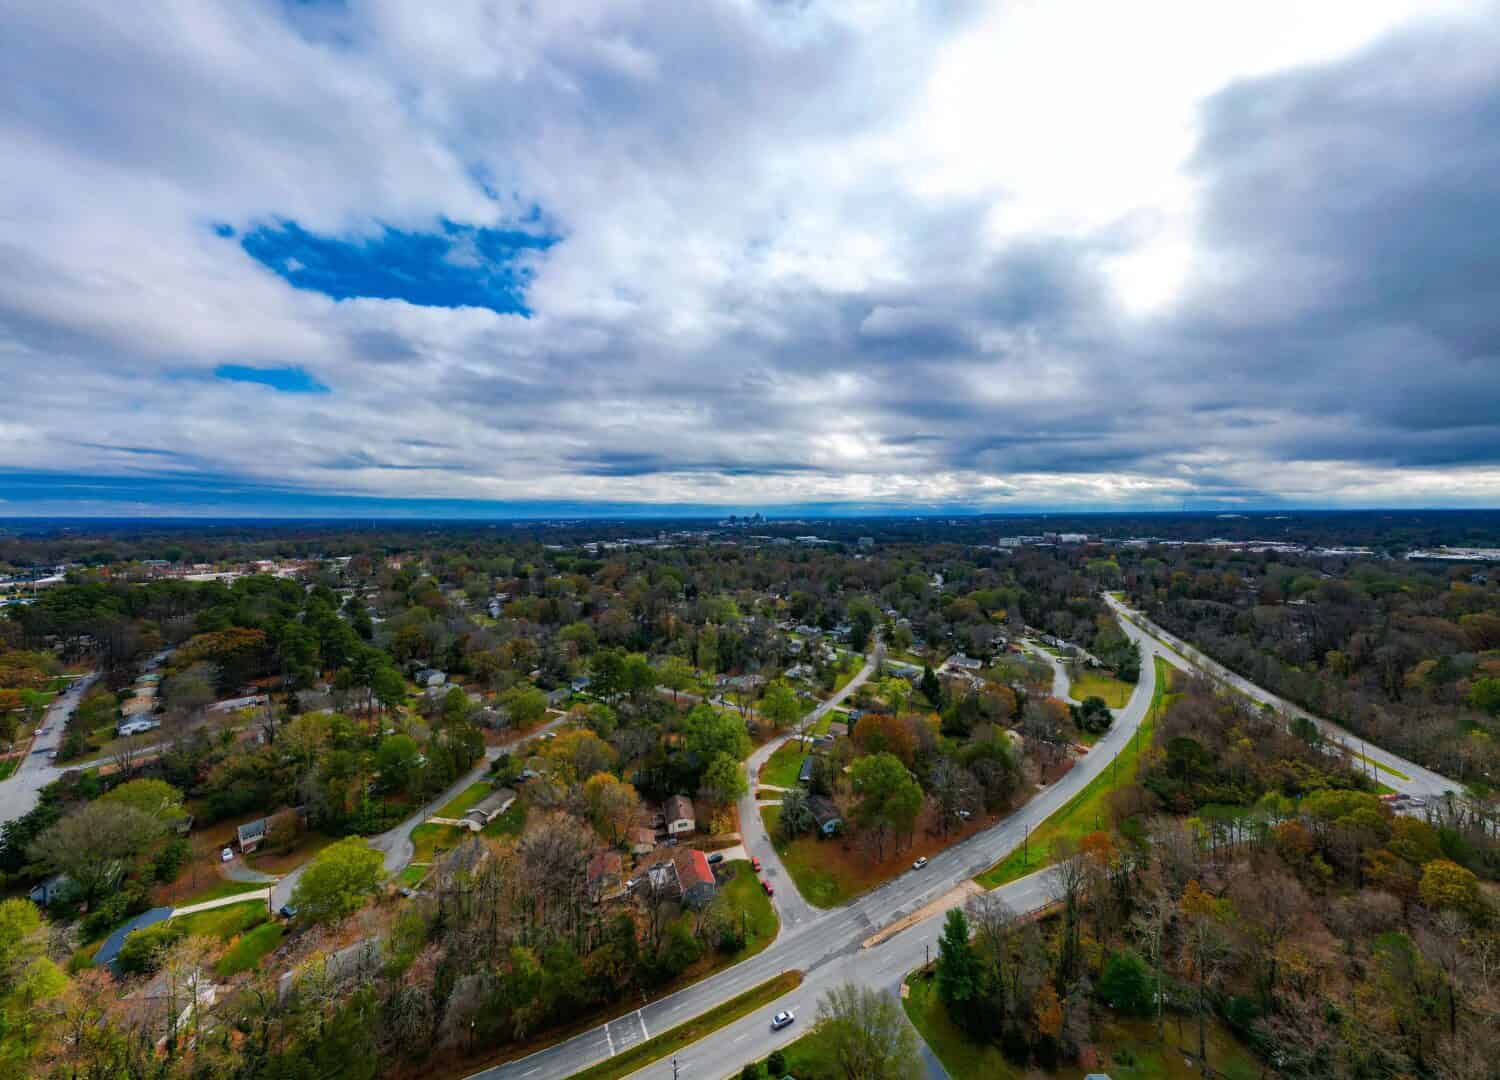 Una ripresa aerea sopra i sobborghi della Triade piemontese della città di Greensboro nella Carolina del Nord